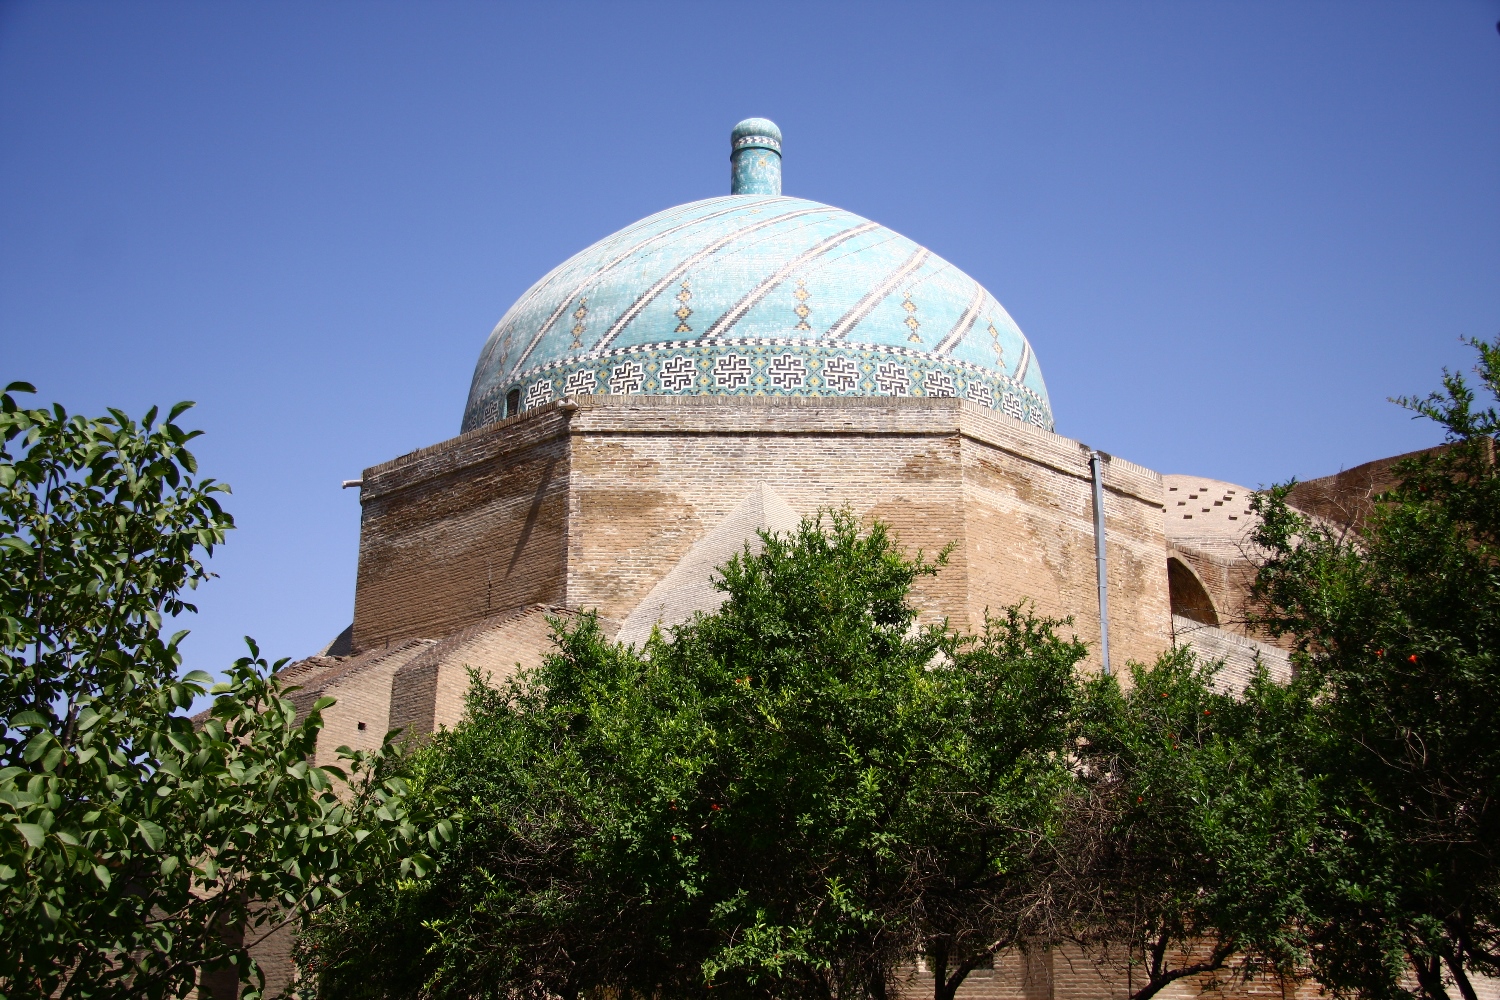 مسجد جامع عتیق قزوین